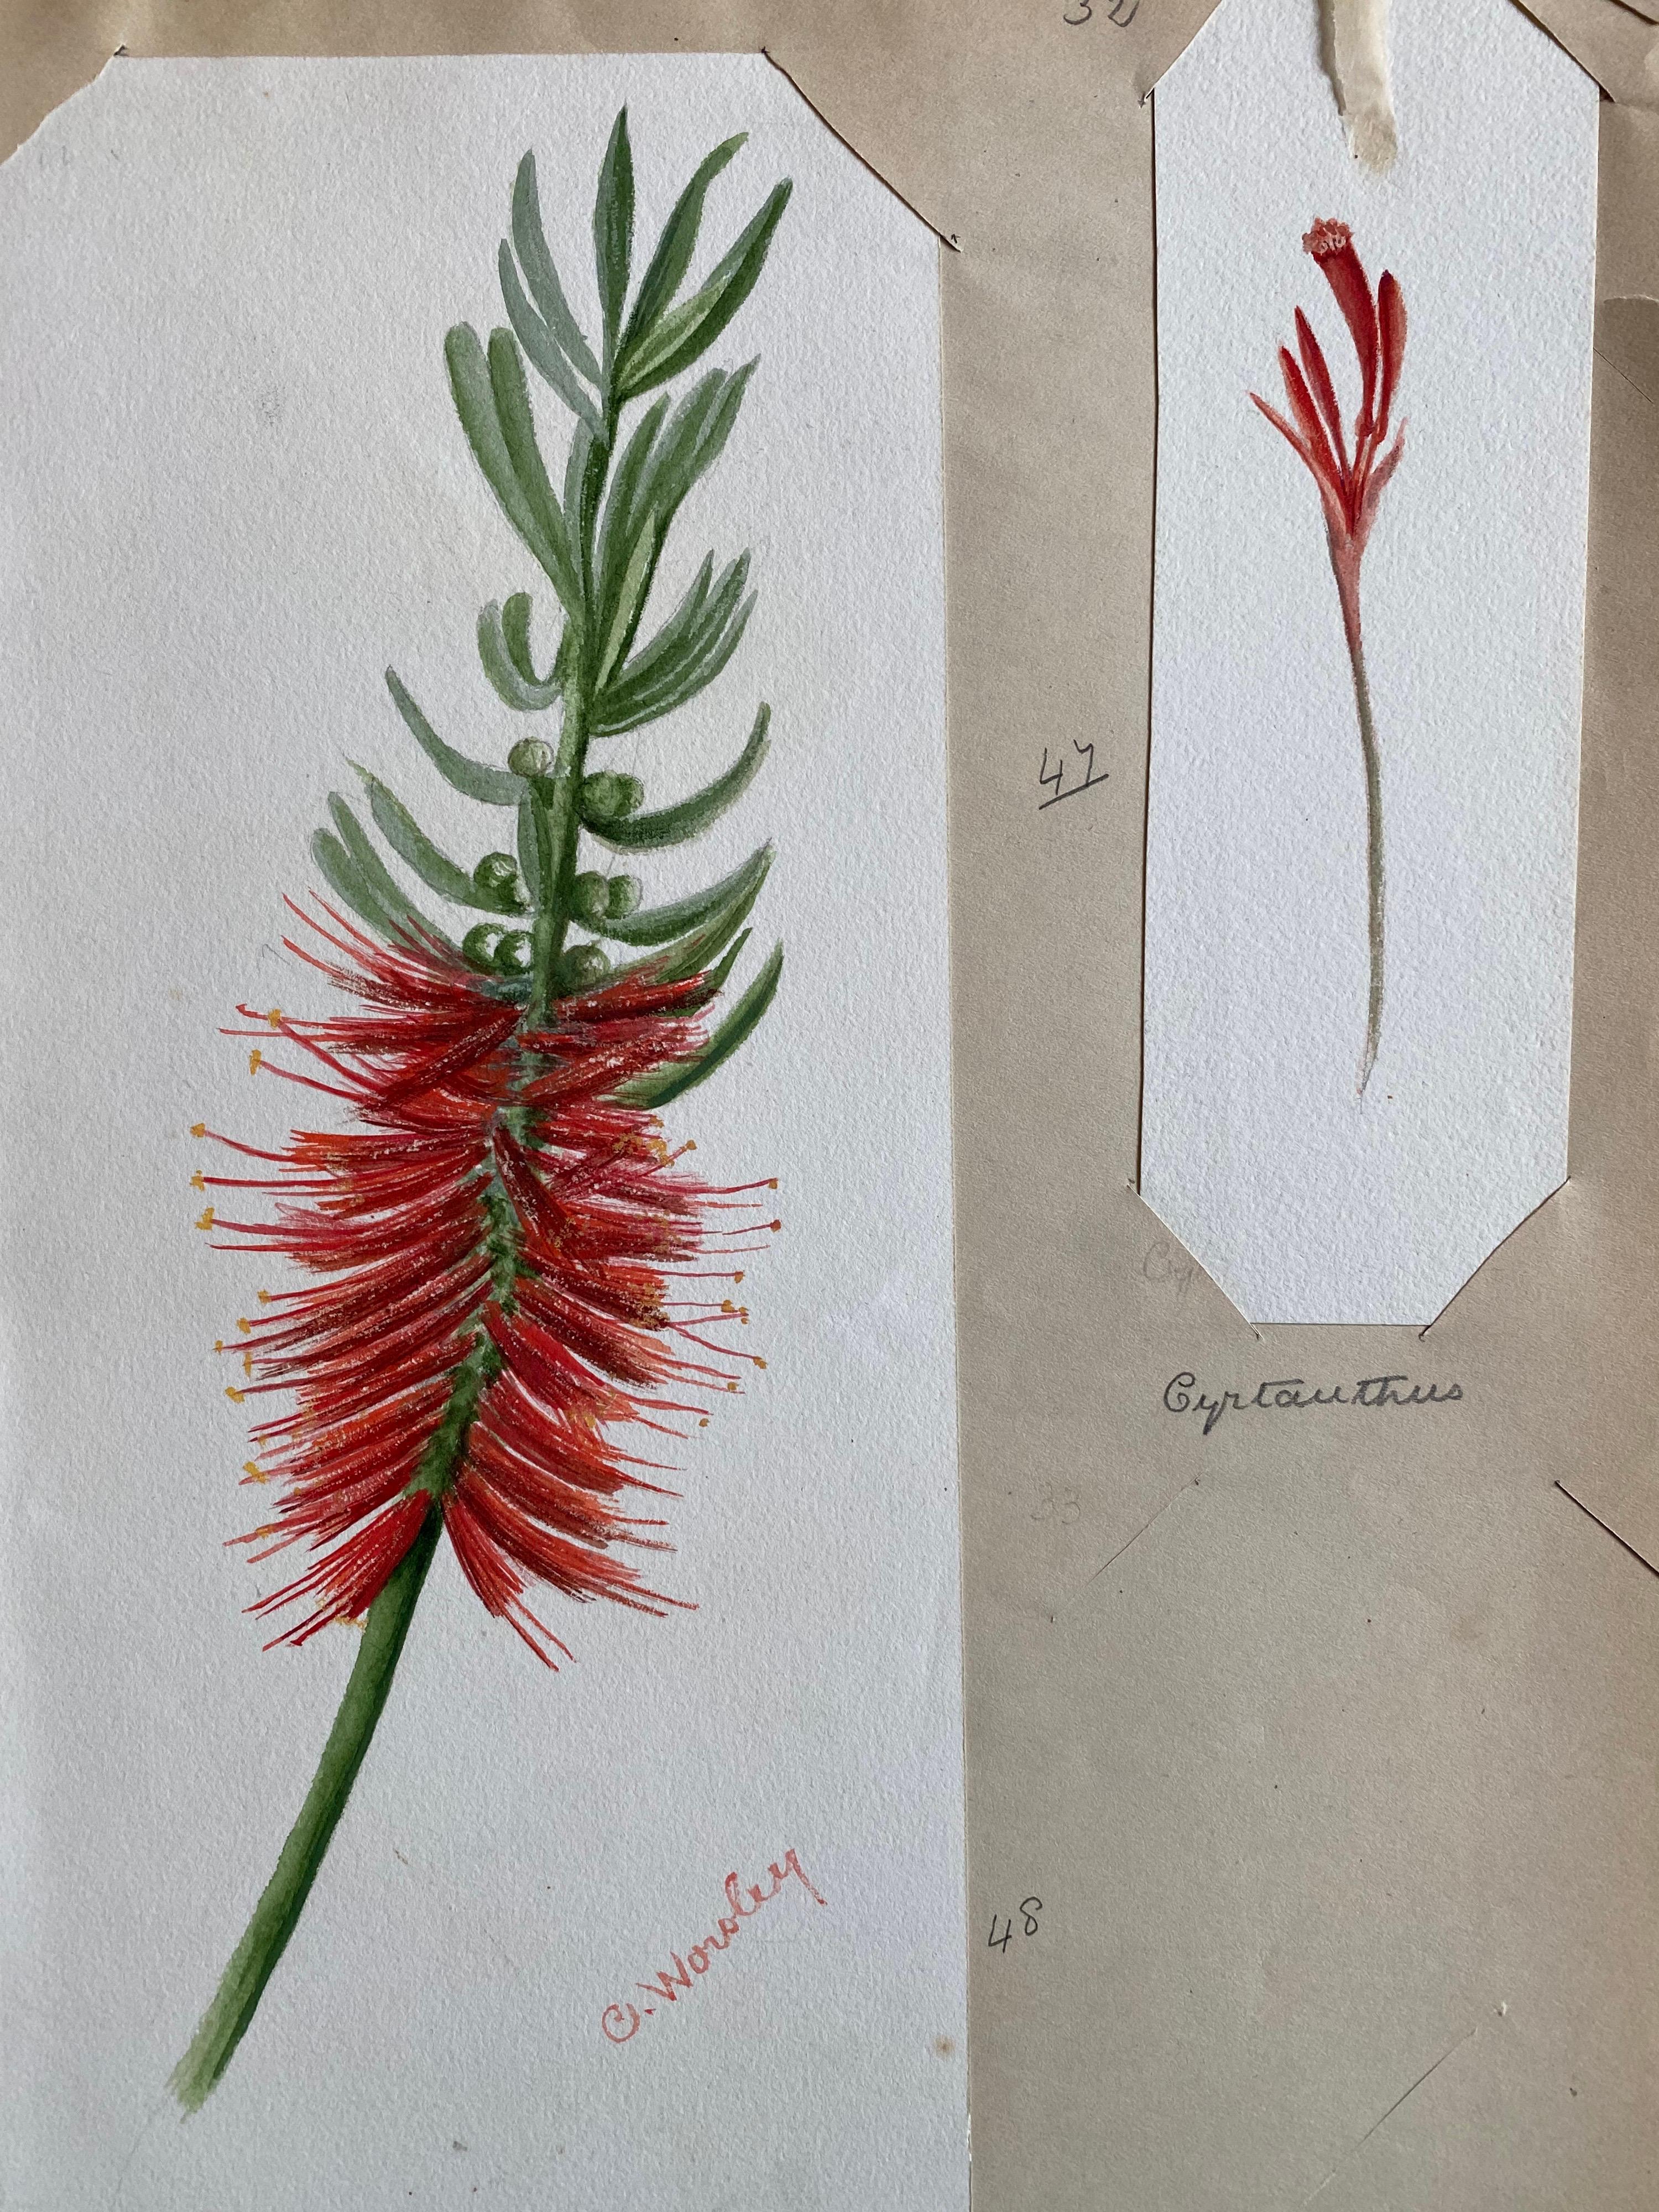 Deux très belles aquarelles botaniques anglaises anciennes représentant cette belle représentation d'une fleur/plante. L'œuvre nous est parvenue d'une collection privée du Surrey, en Angleterre, et faisait partie d'un album d'œuvres rassemblées par